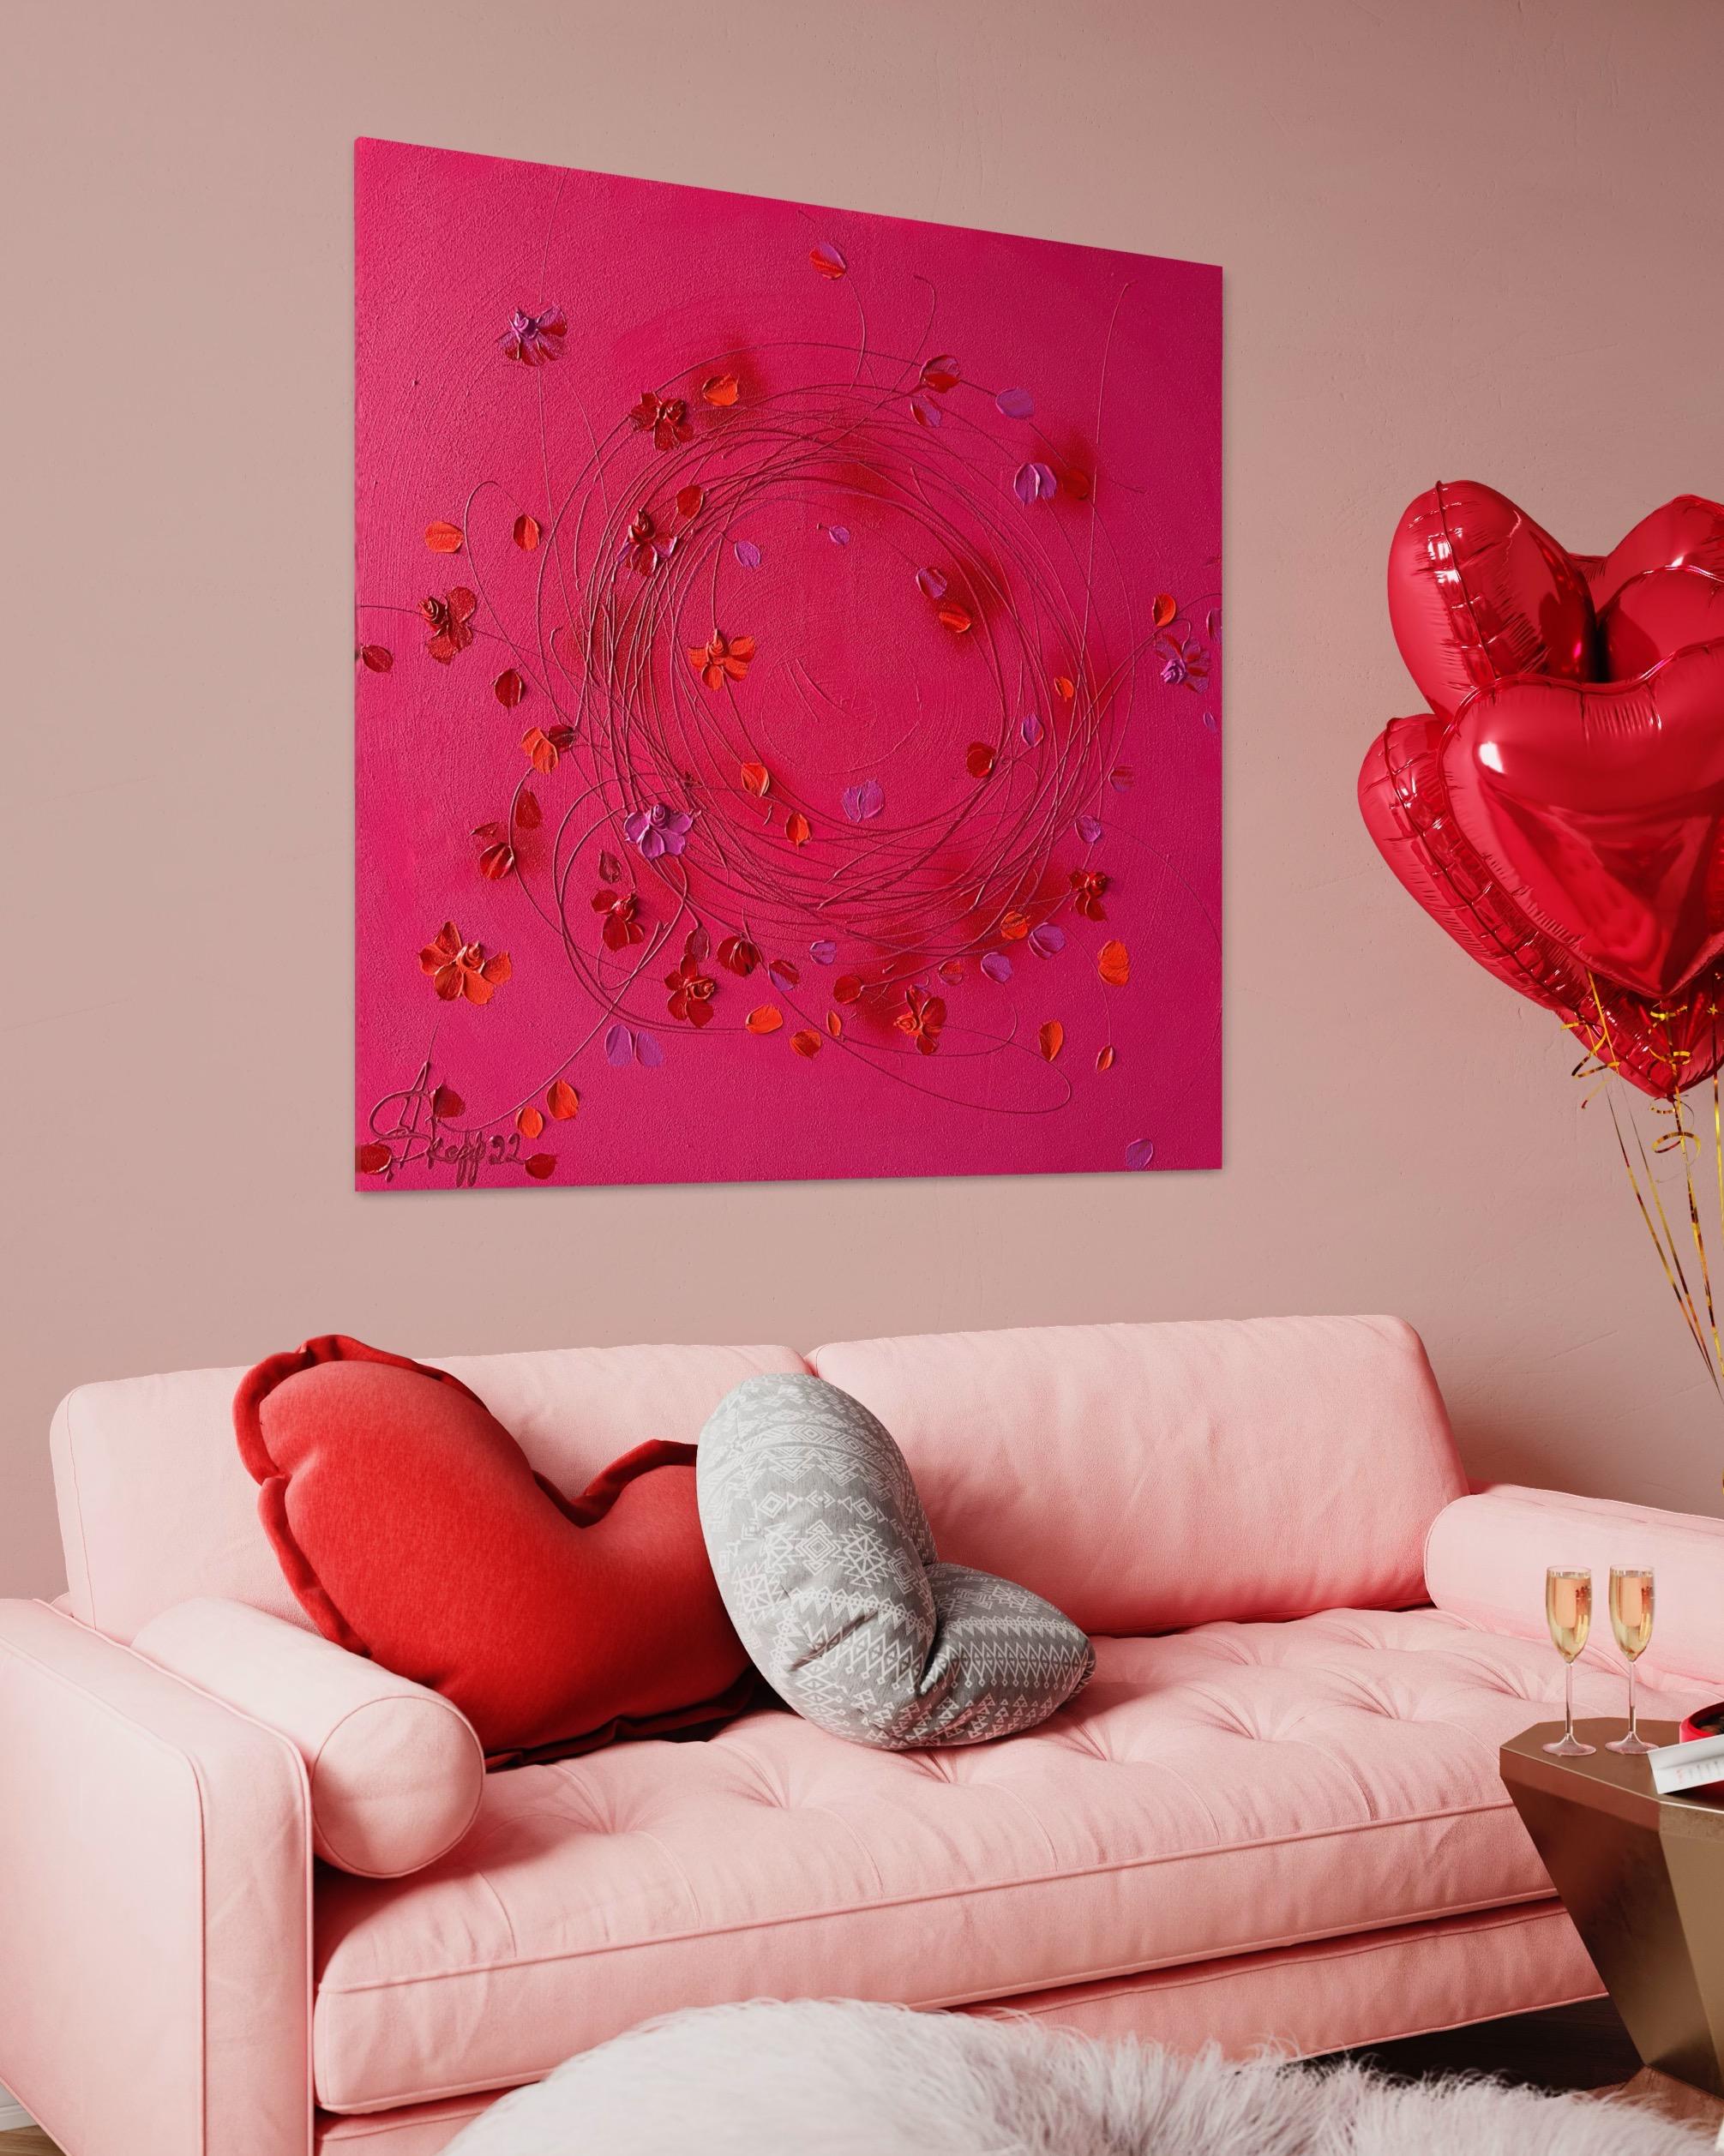 Wir stellen ein atemberaubendes florales Meisterwerk in der Pantone-Farbe des Jahres 2023 vor - Viva Magenta. Dieses Kunstwerk aus strukturiertem Acryl auf Leinwand misst 90x90x2 cm und zeigt eine bezaubernde Darstellung roter Rosen, die